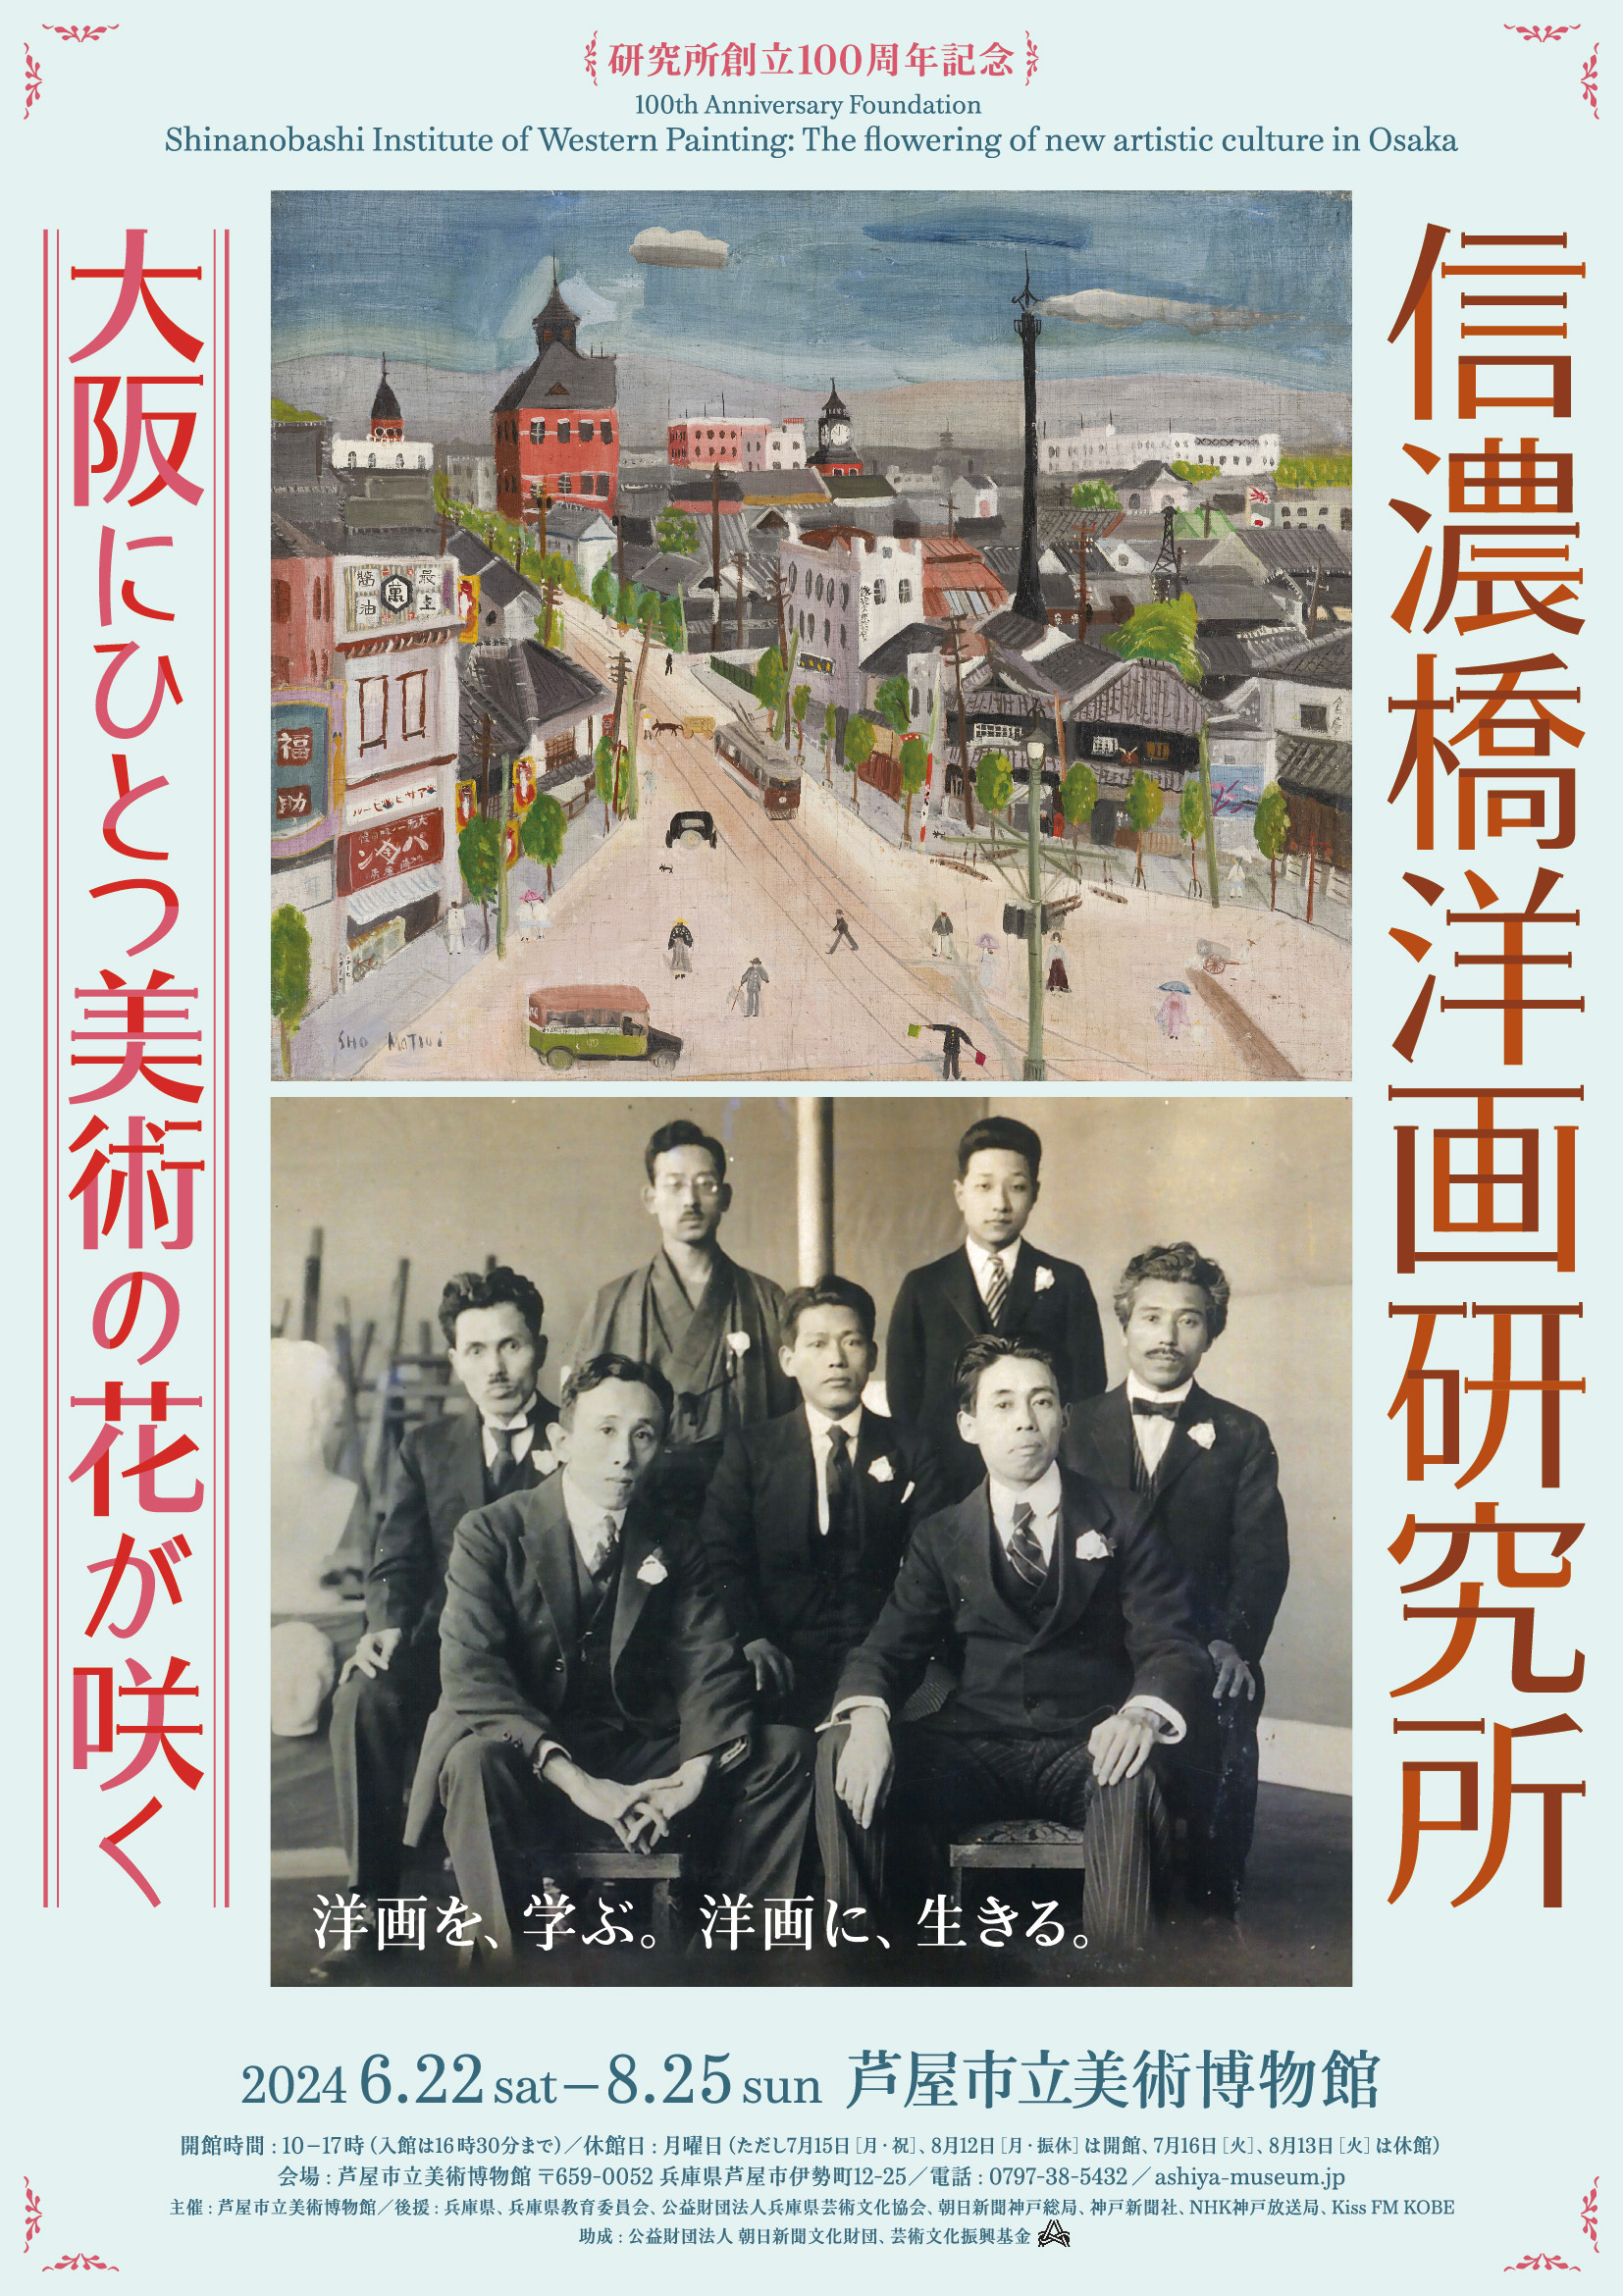 特別展「創立100周年記念 信濃橋洋画研究所 ―大阪にひとつ美術の花が咲く―」